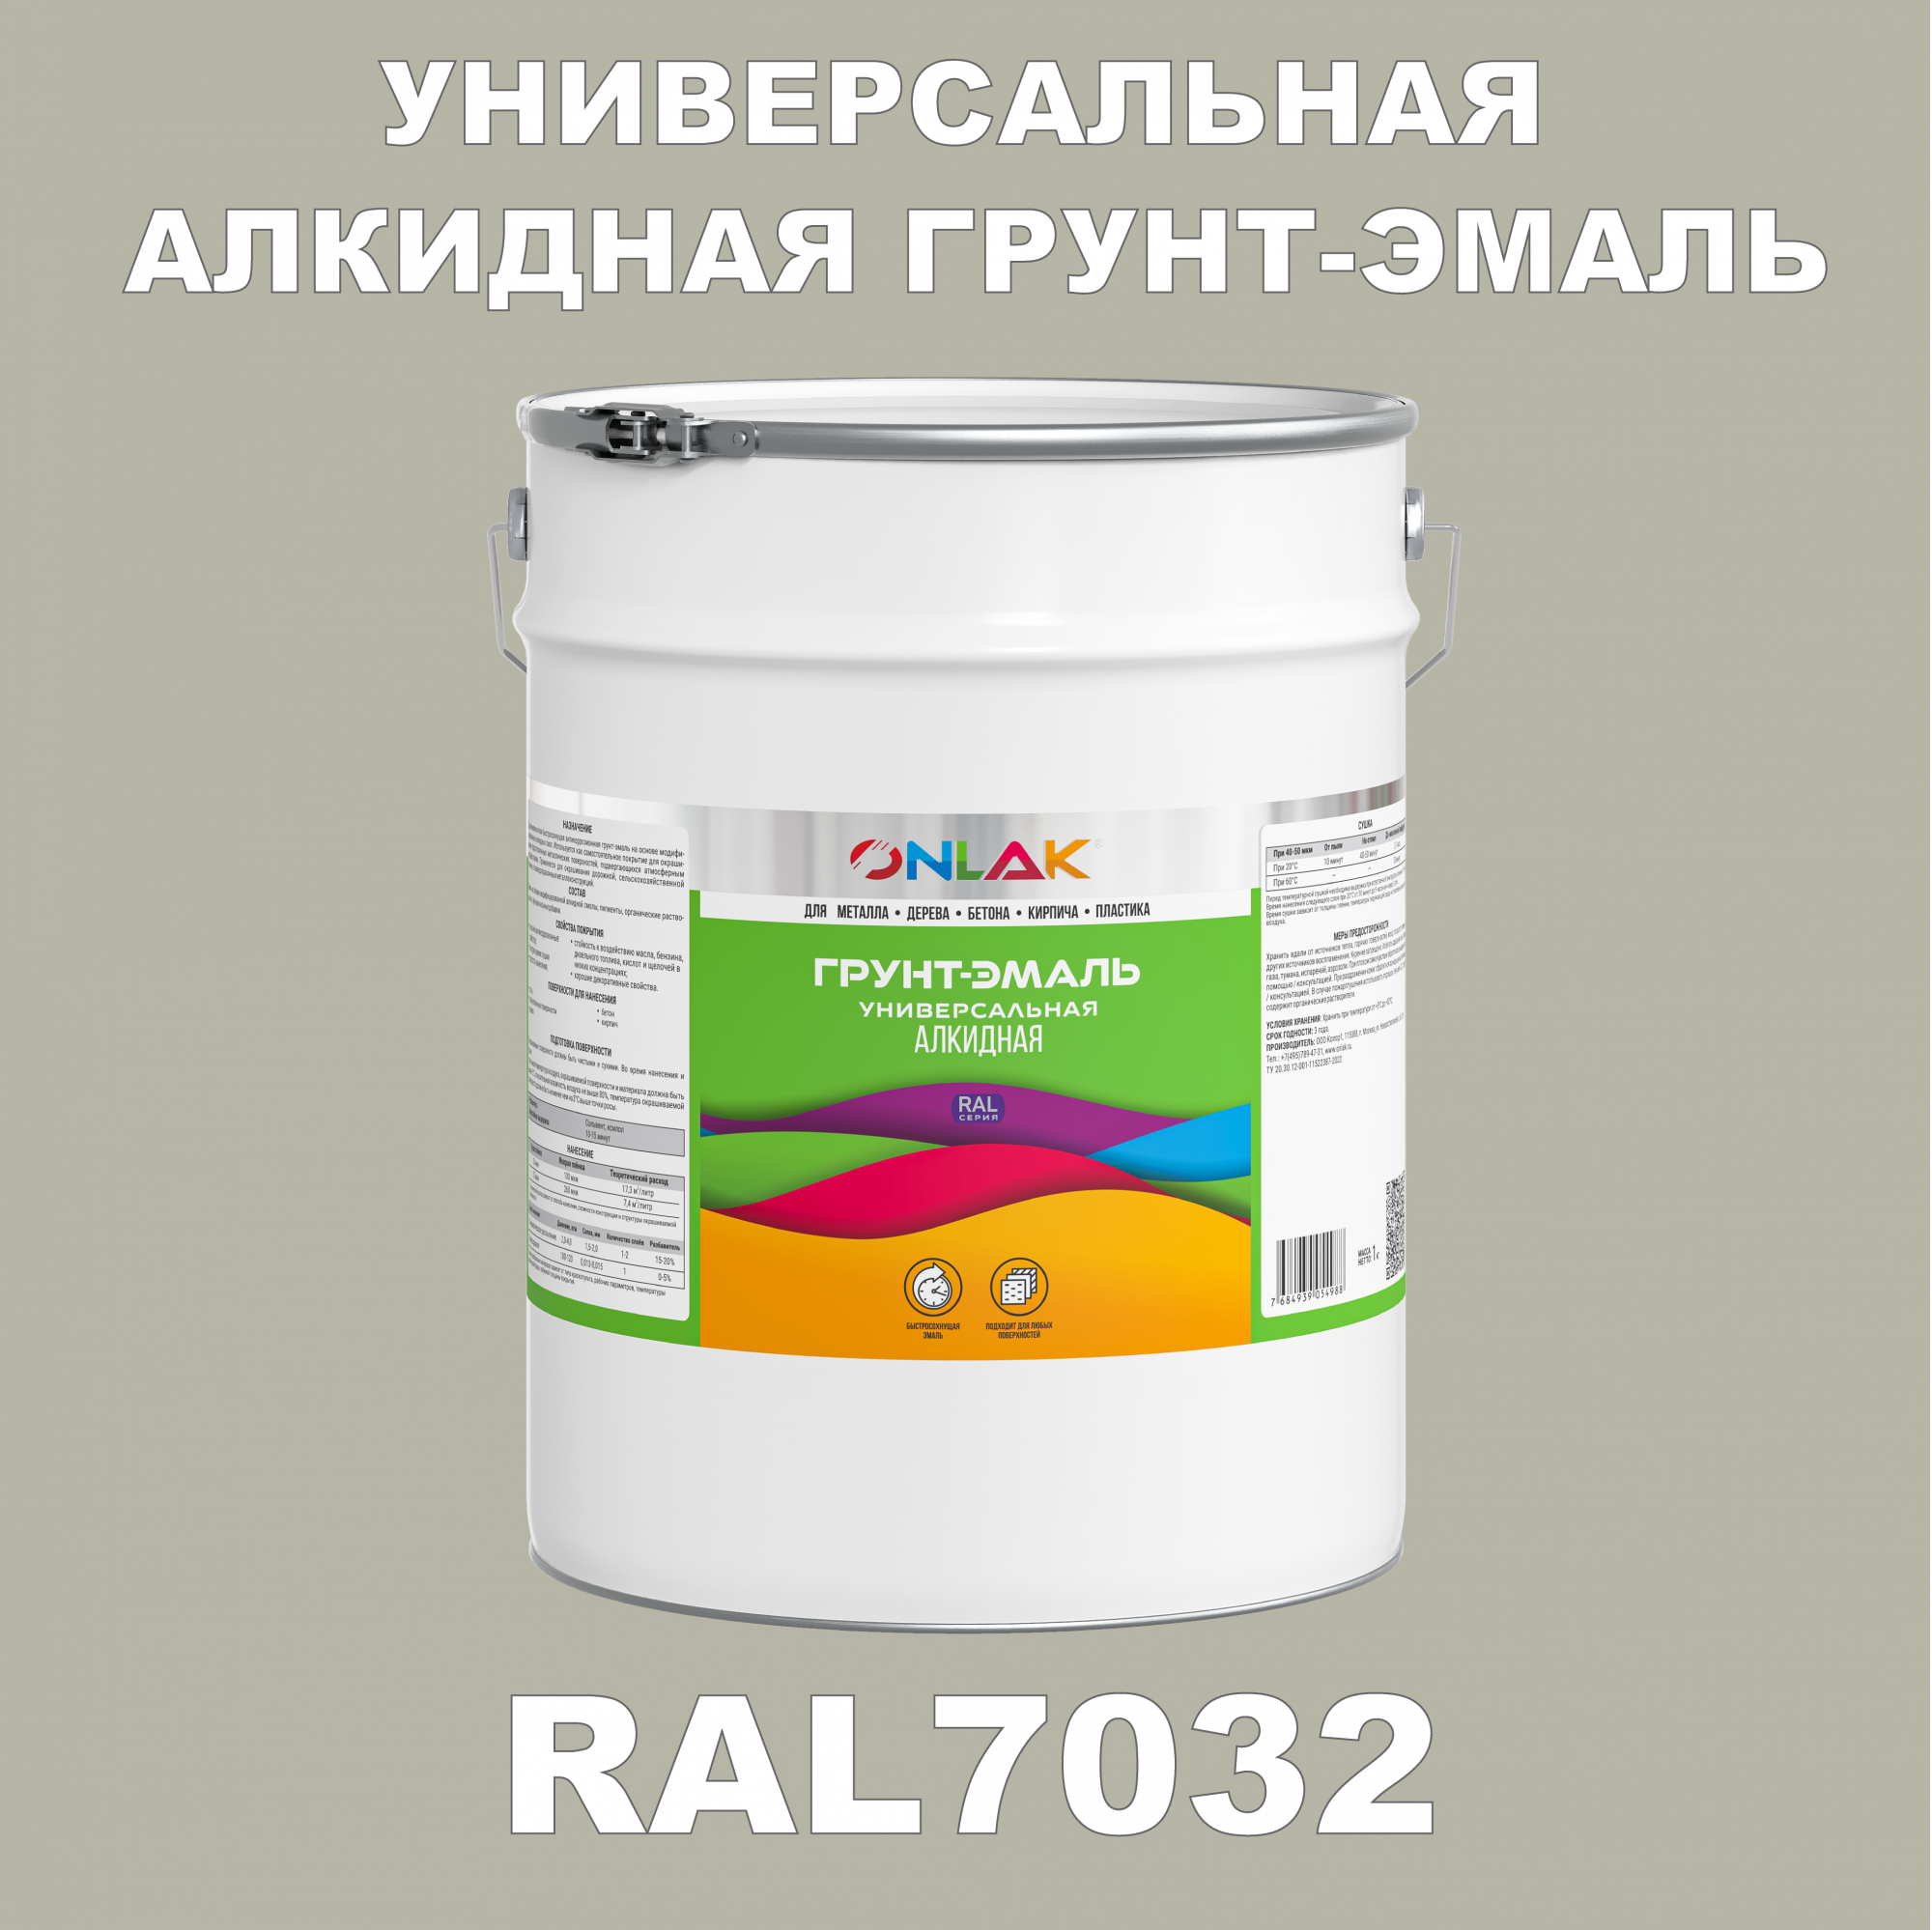 Грунт-эмаль ONLAK 1К RAL7032 антикоррозионная алкидная по металлу по ржавчине 20 кг грунт эмаль neomid по ржавчине быстросохнущая алкидная серая 0 9 кг